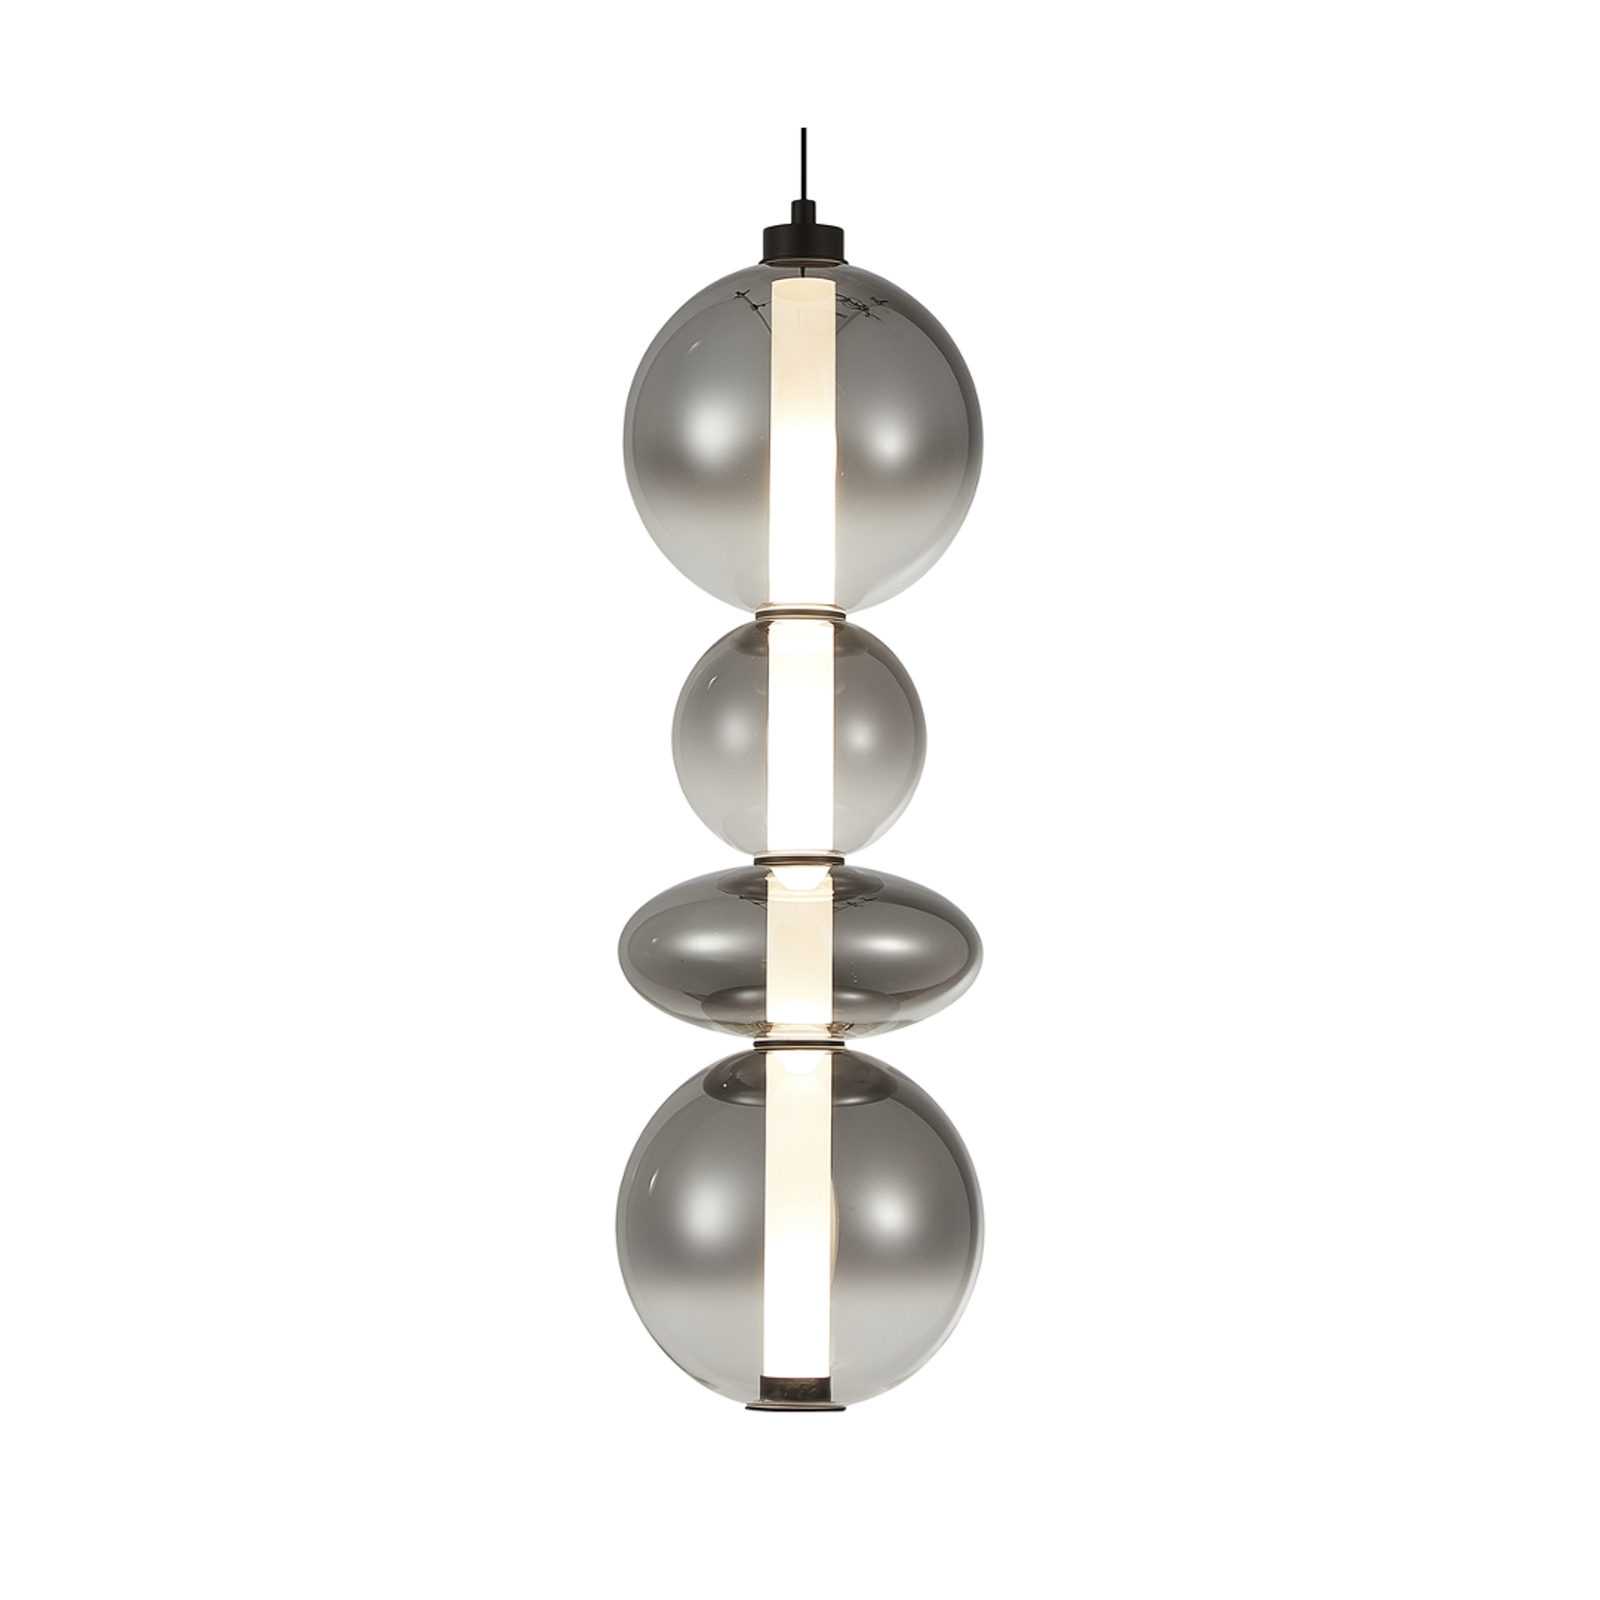 LED-riippuvalaisin Daphne, harmaa läpinäkyvä lasi, korkeus 62 cm